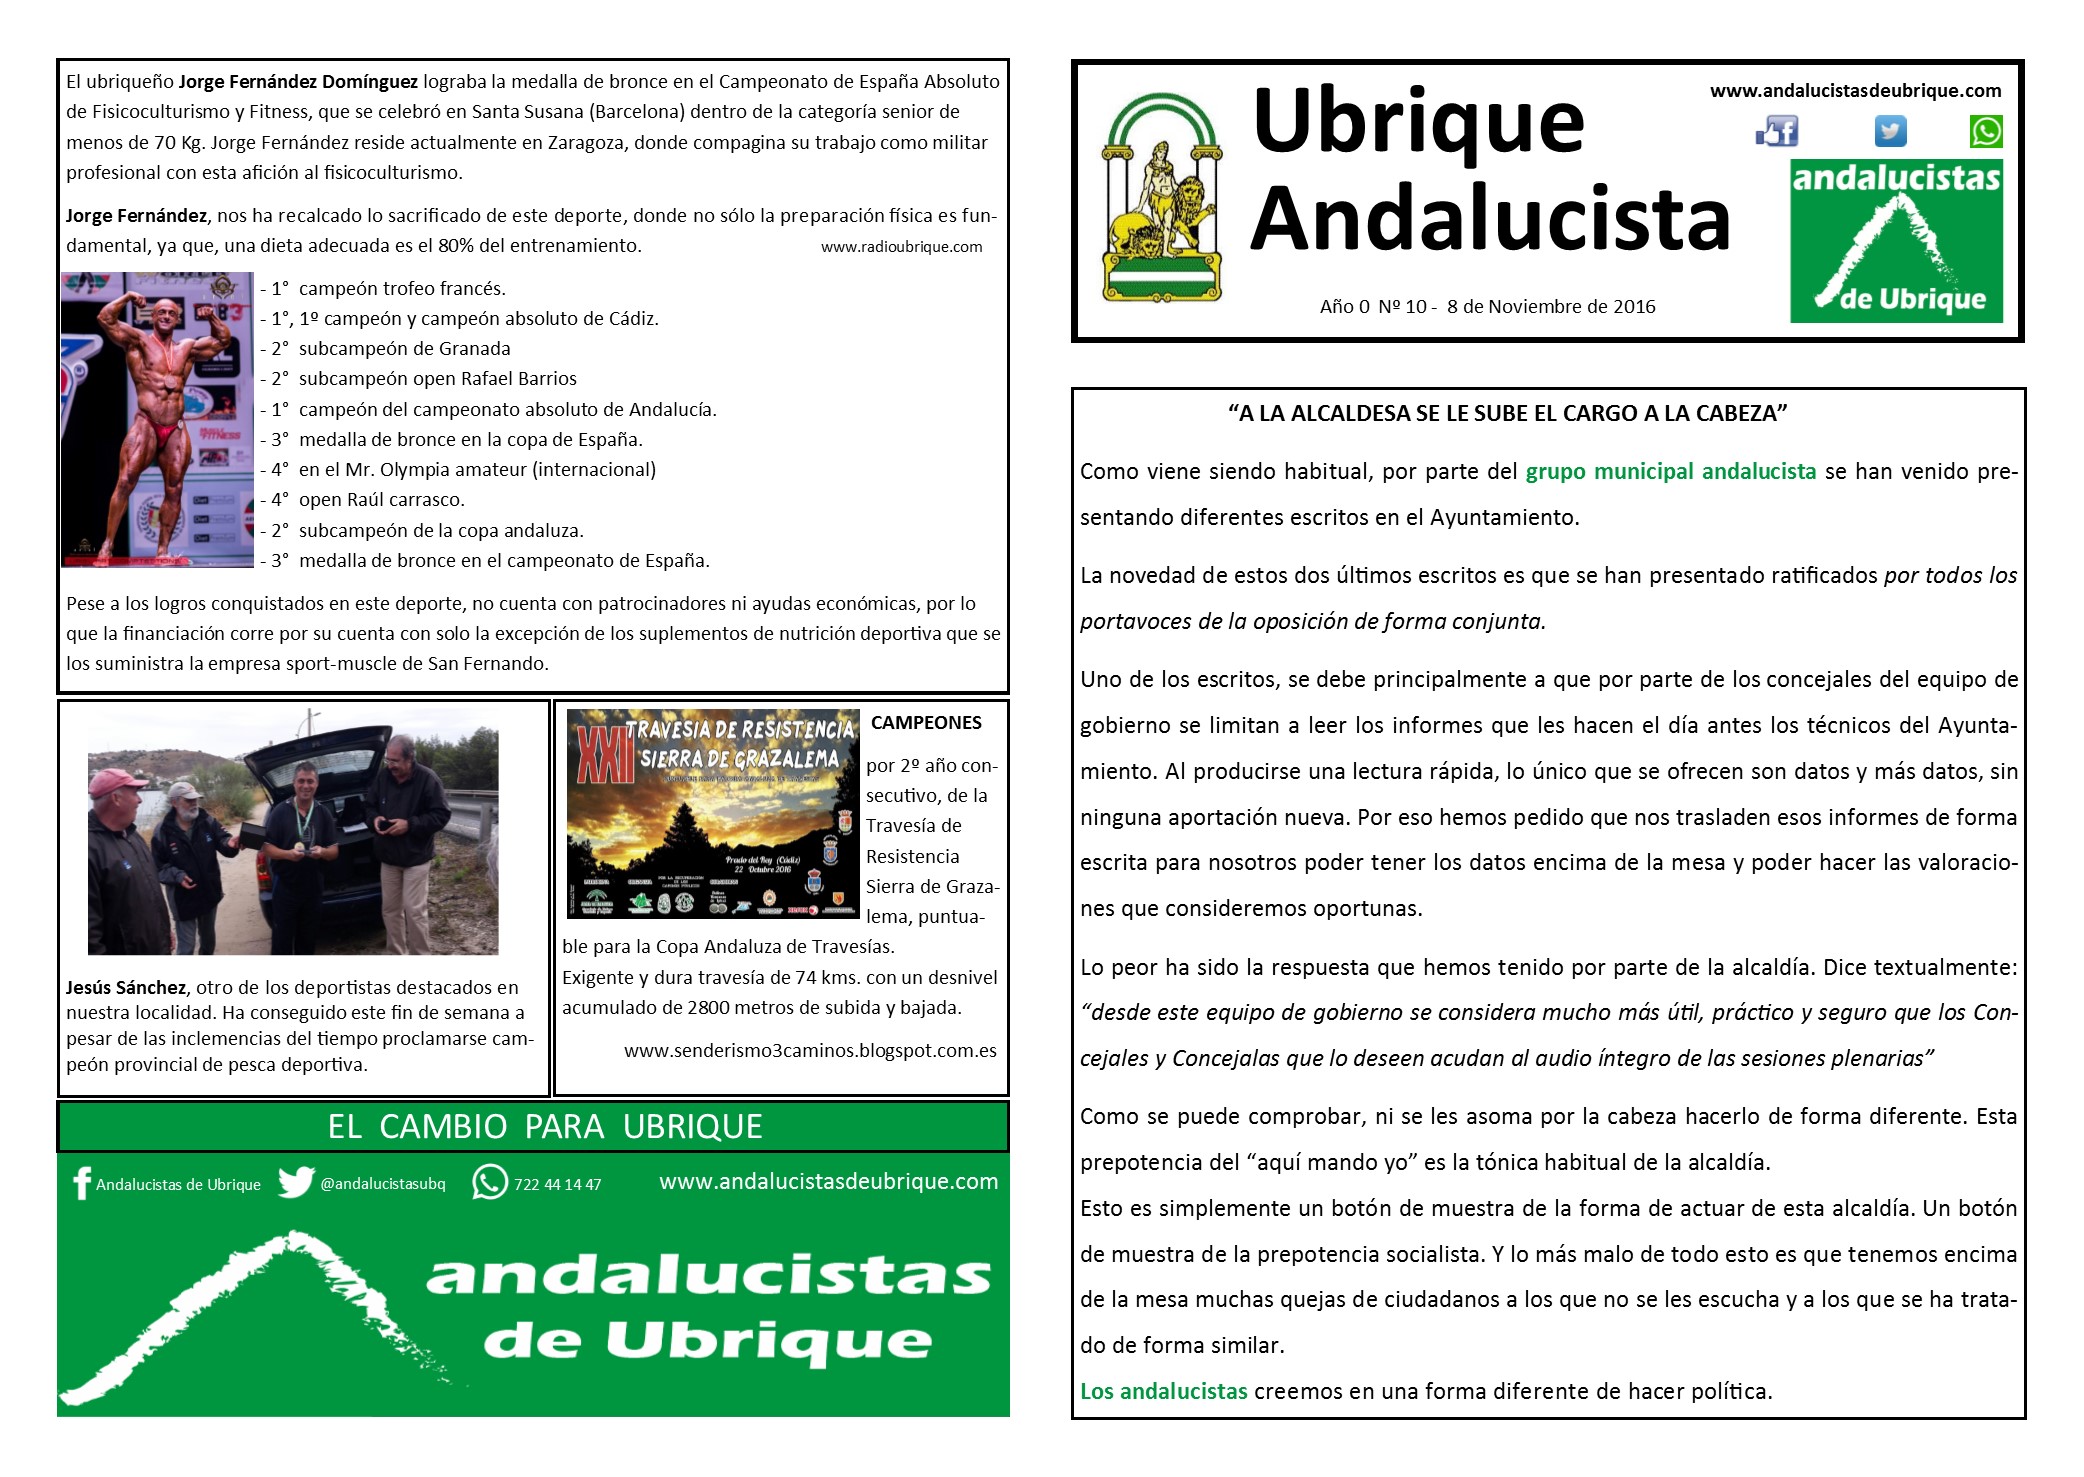 Photo of Boletín Ubrique Andalucista nº 10 (08 Nov. 2016)